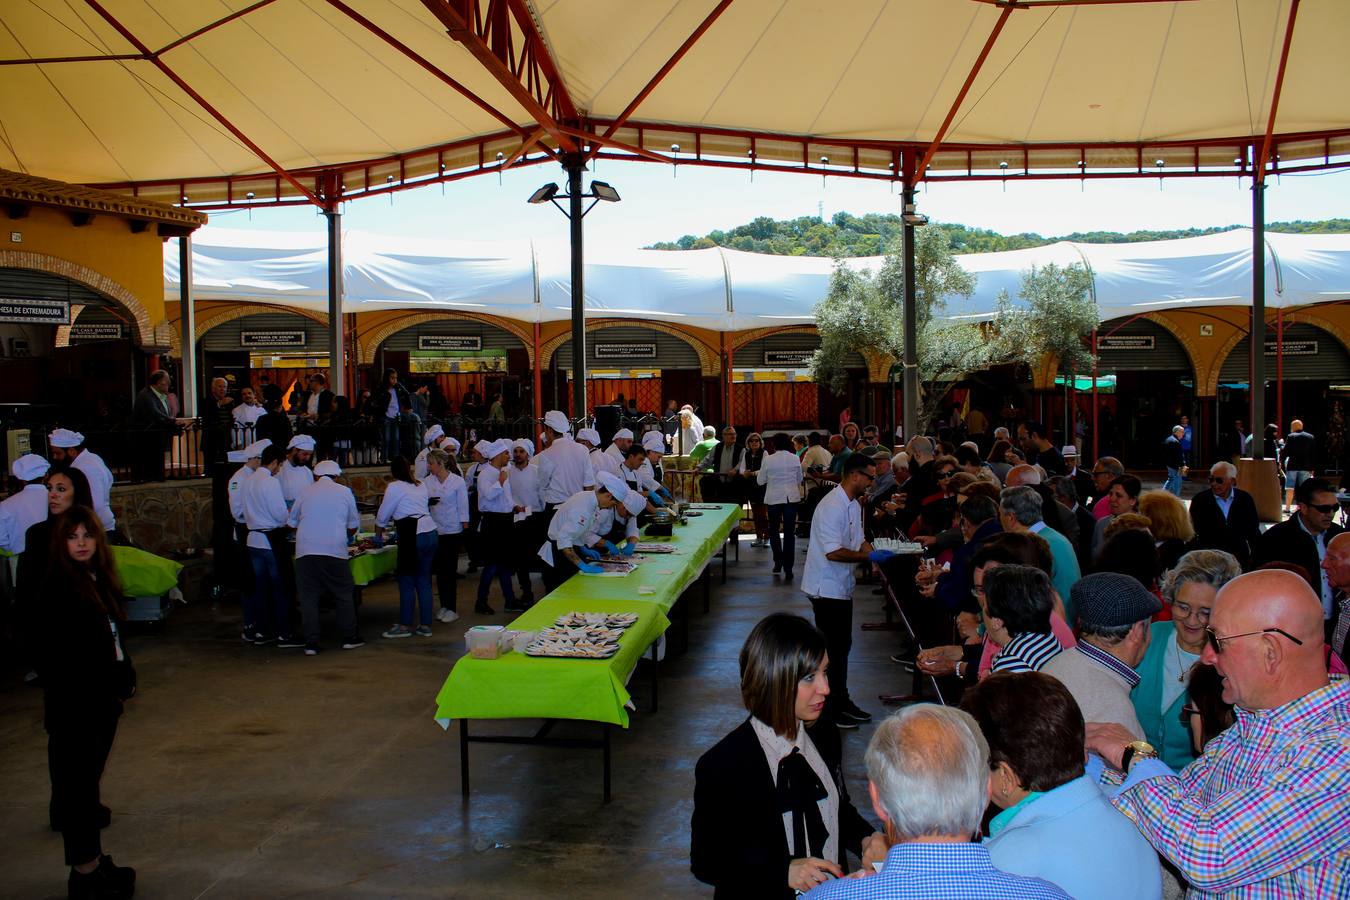 La Escuela de Hostelería de Extremadura ofrece distintas tapas con jamón ibérico